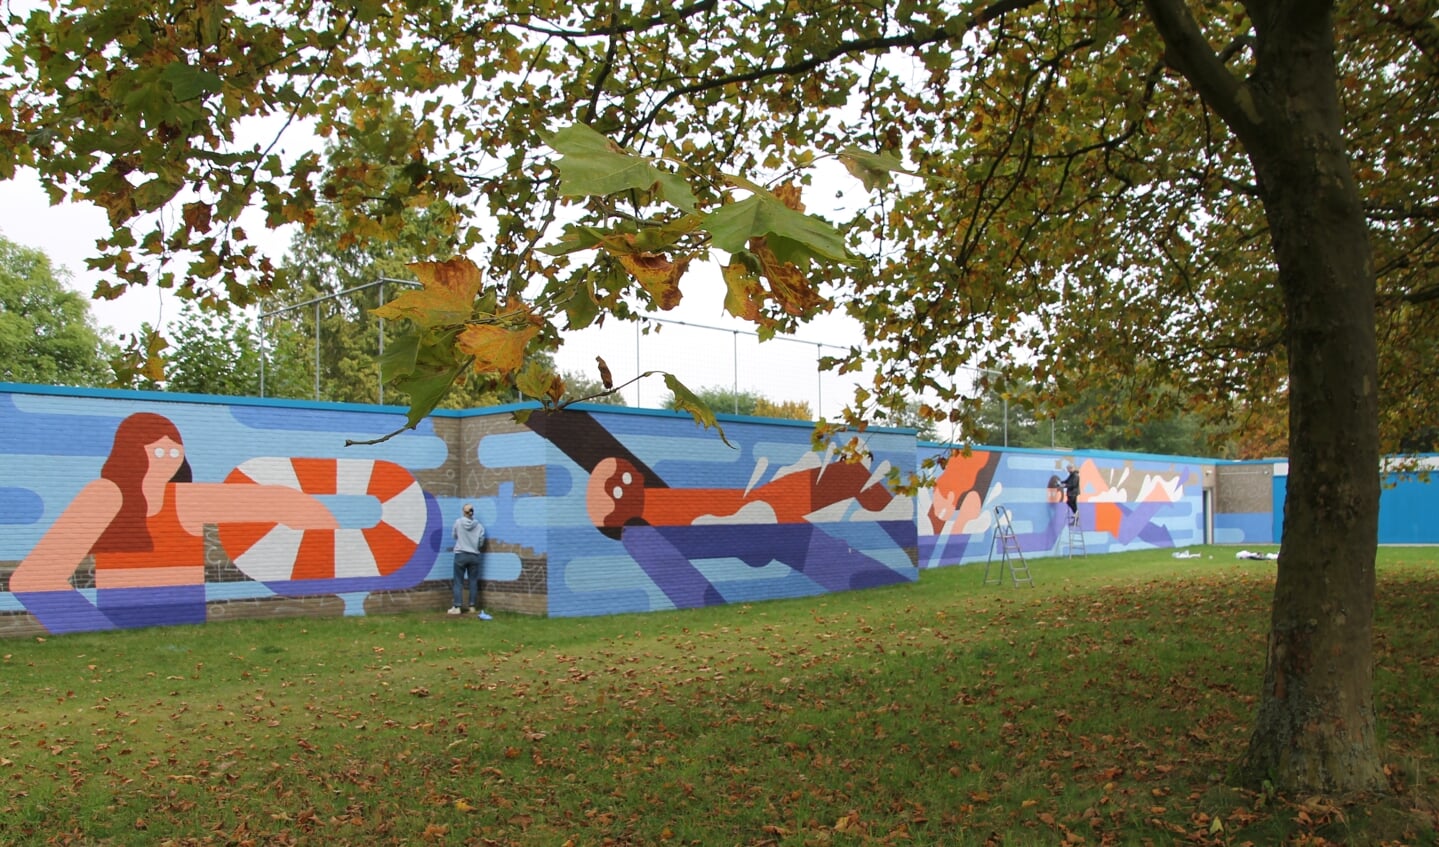 Op de linker muur van zwembad 't Meekenesch verschijnt een enorme muurschildering in bijpassend thema. Foto: Annekée Cuppers